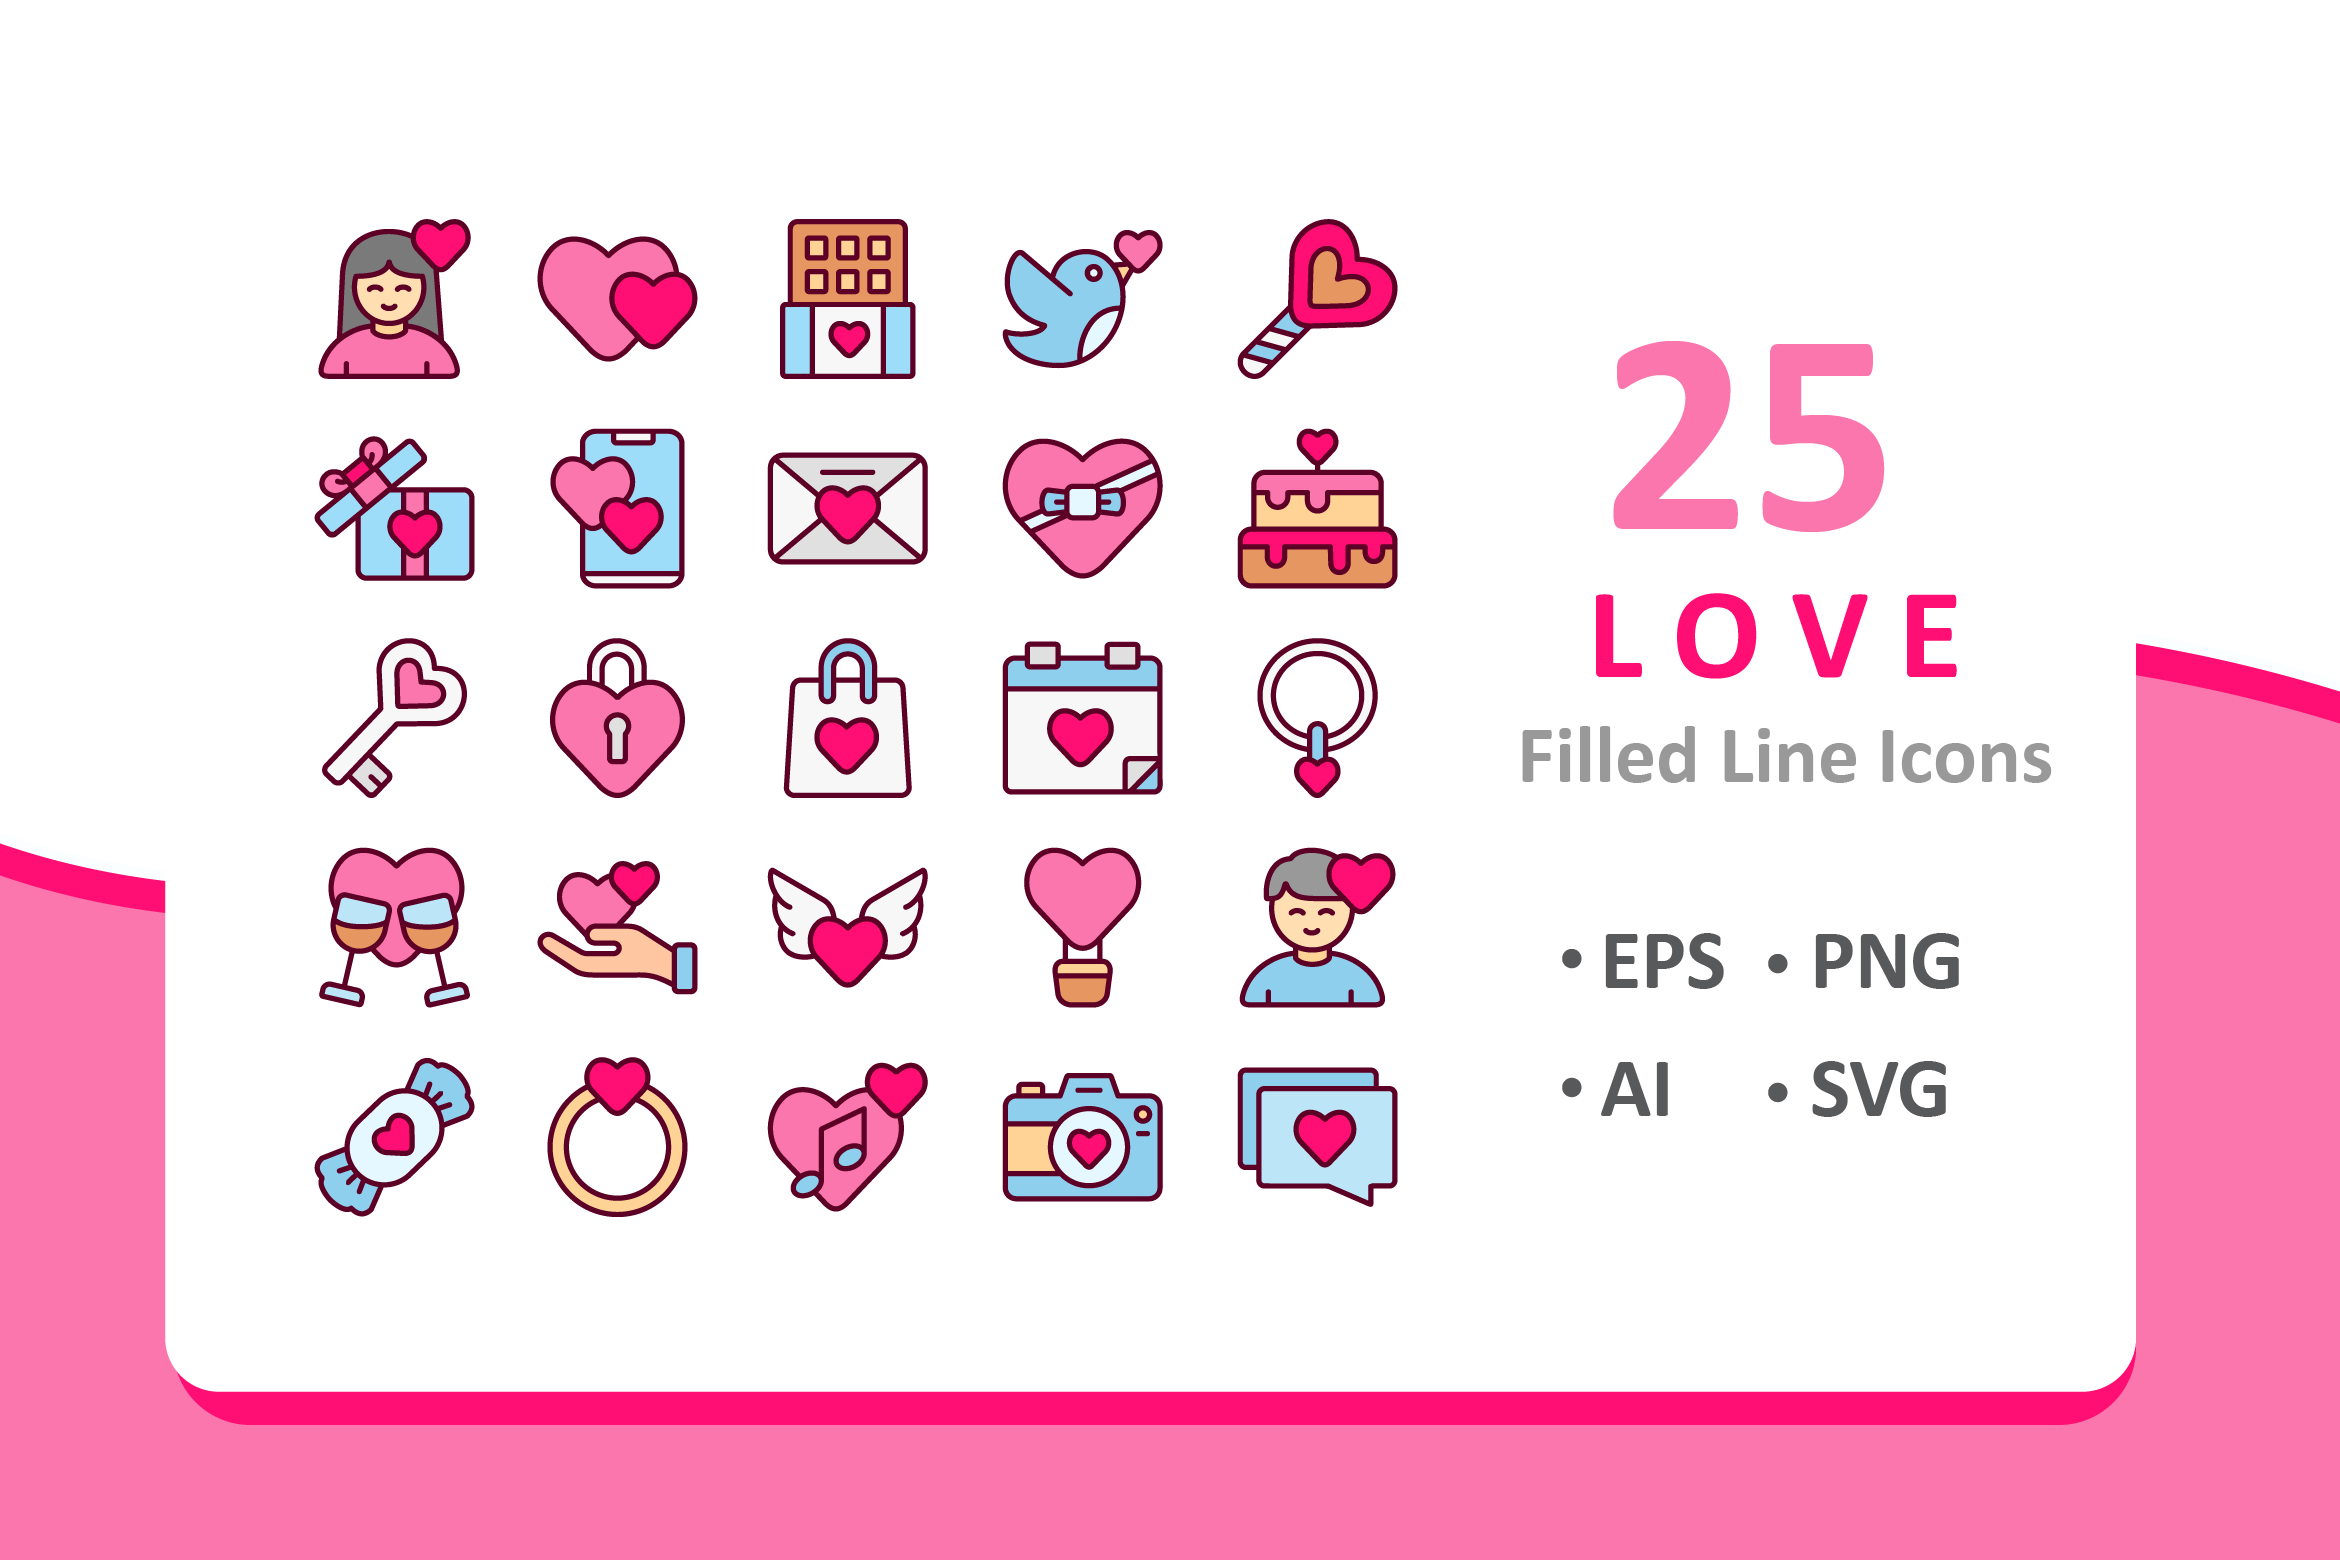 爱情主题填充图标素材 25 Love Icons – Fil